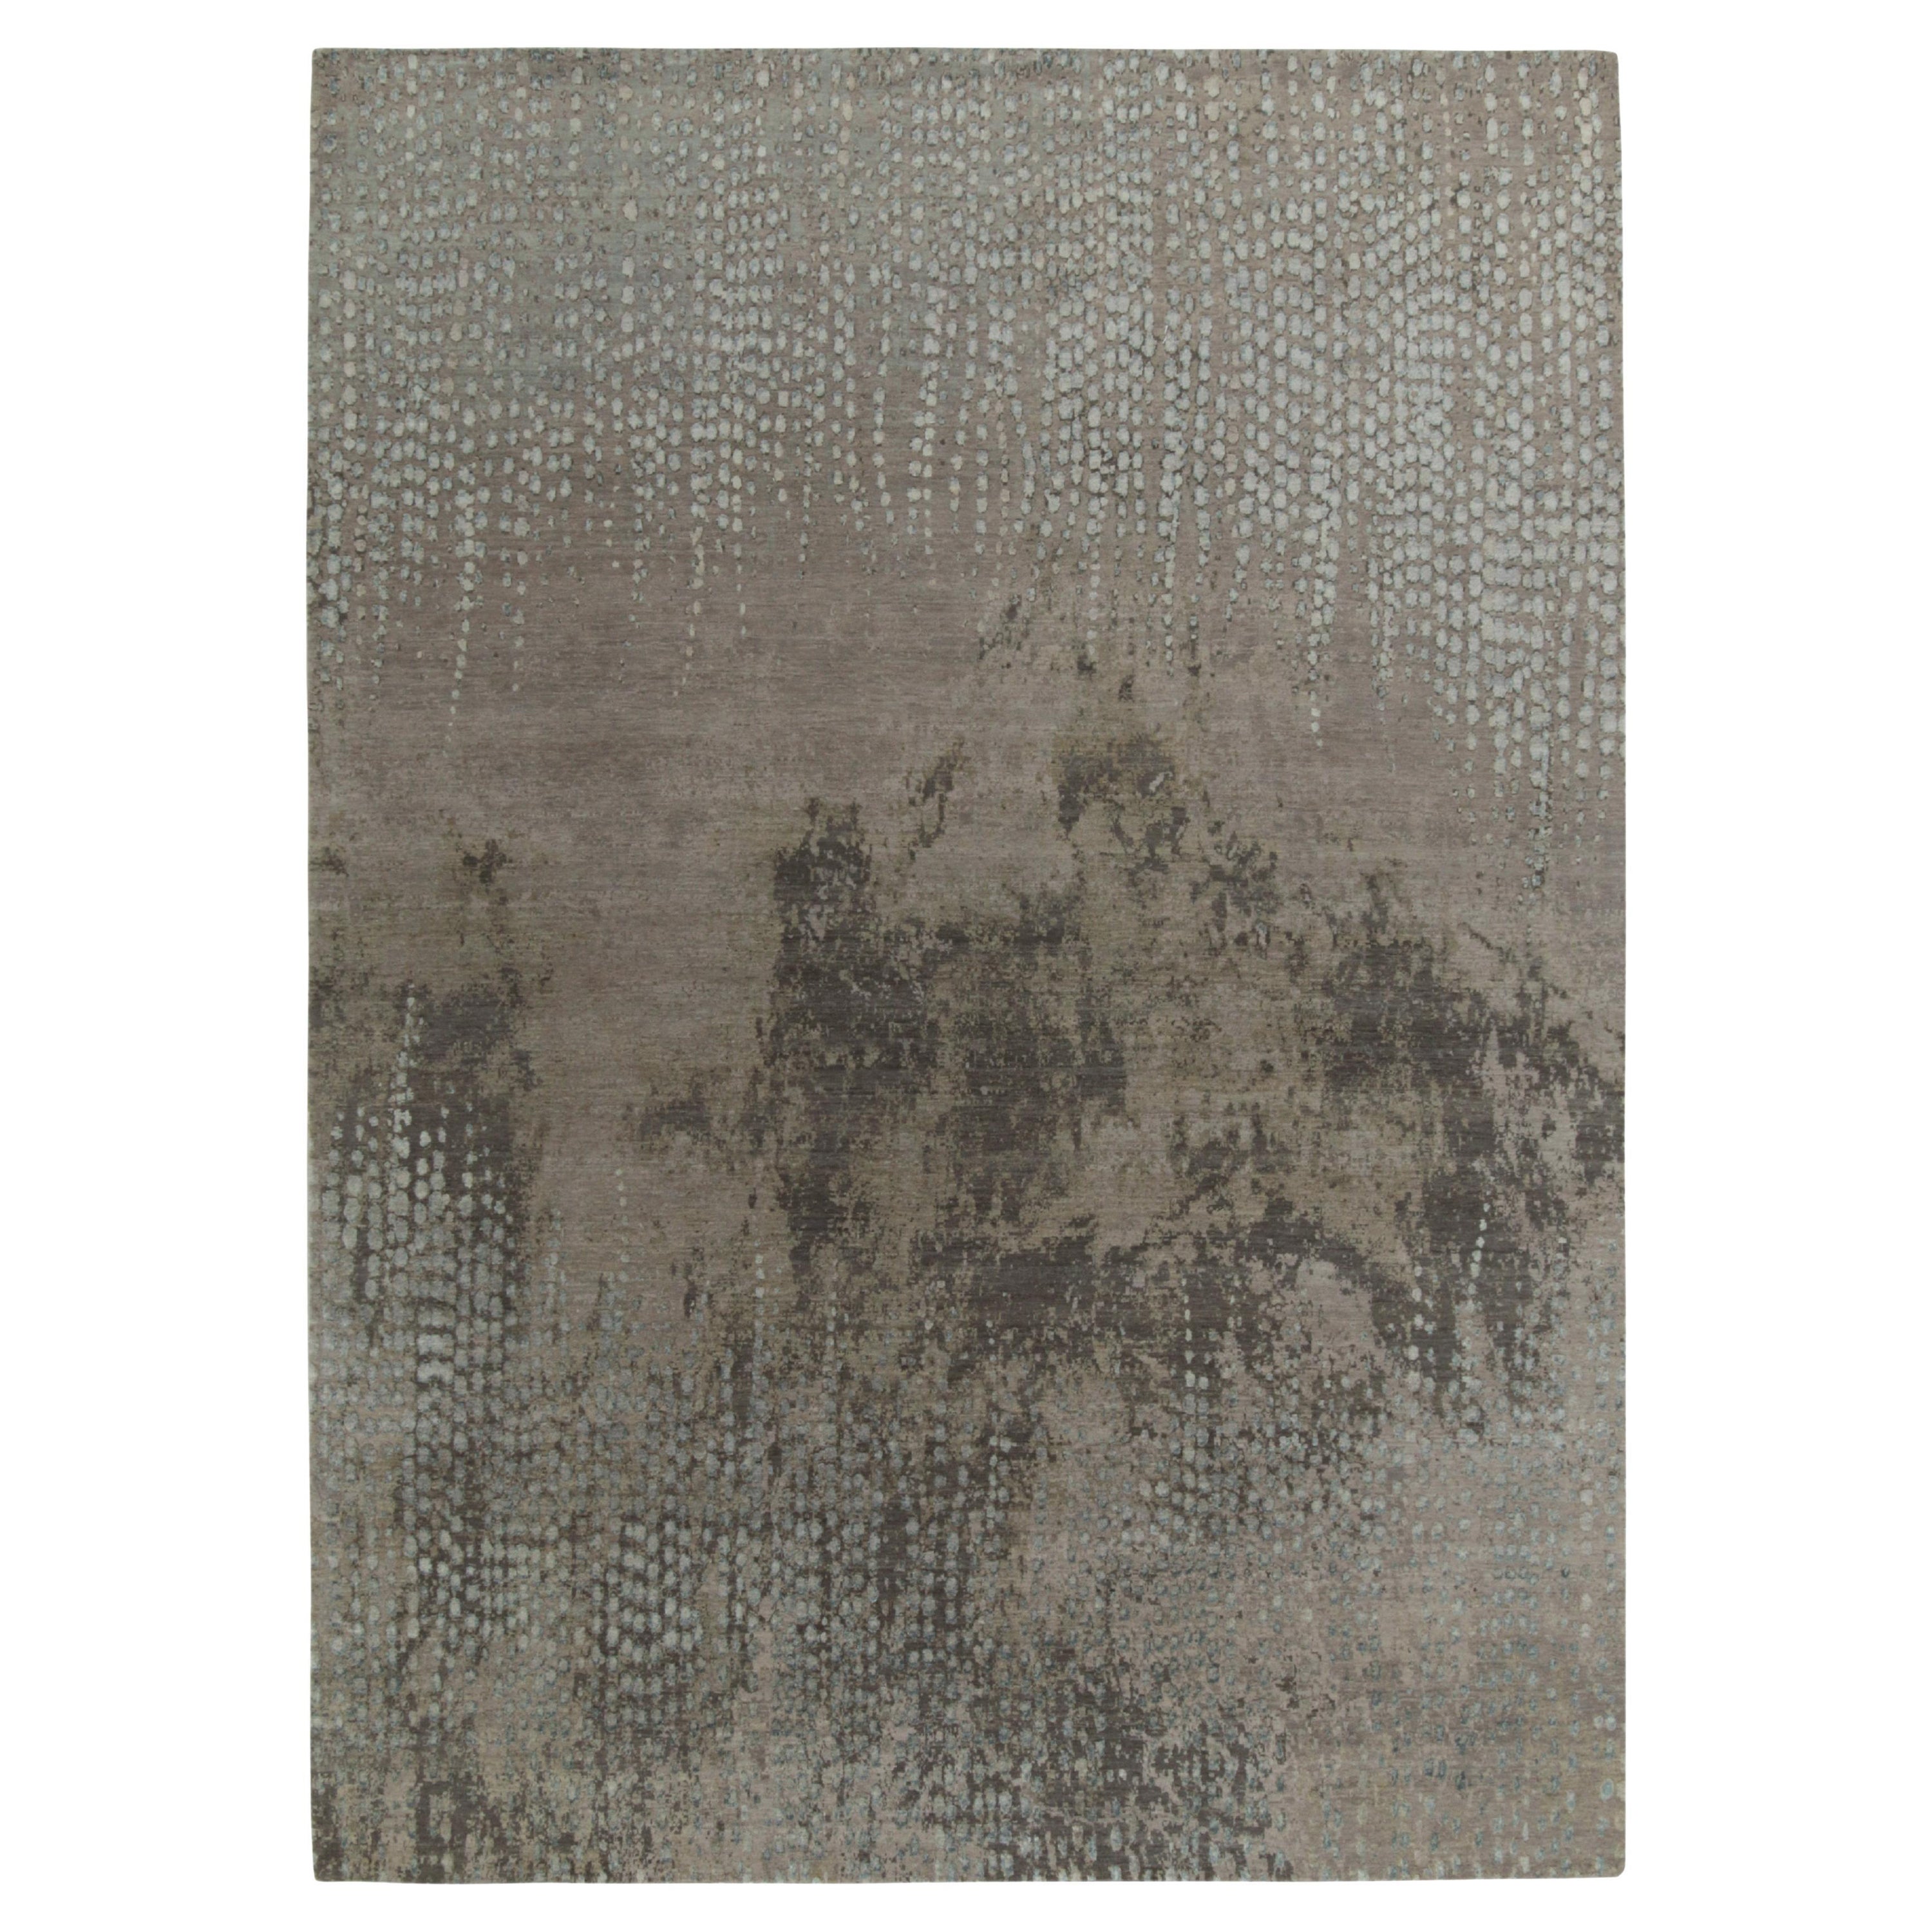 Rug & Kilim's Contemporary Teppich in Grau, Beige und Blau mit abstrakten Mustern